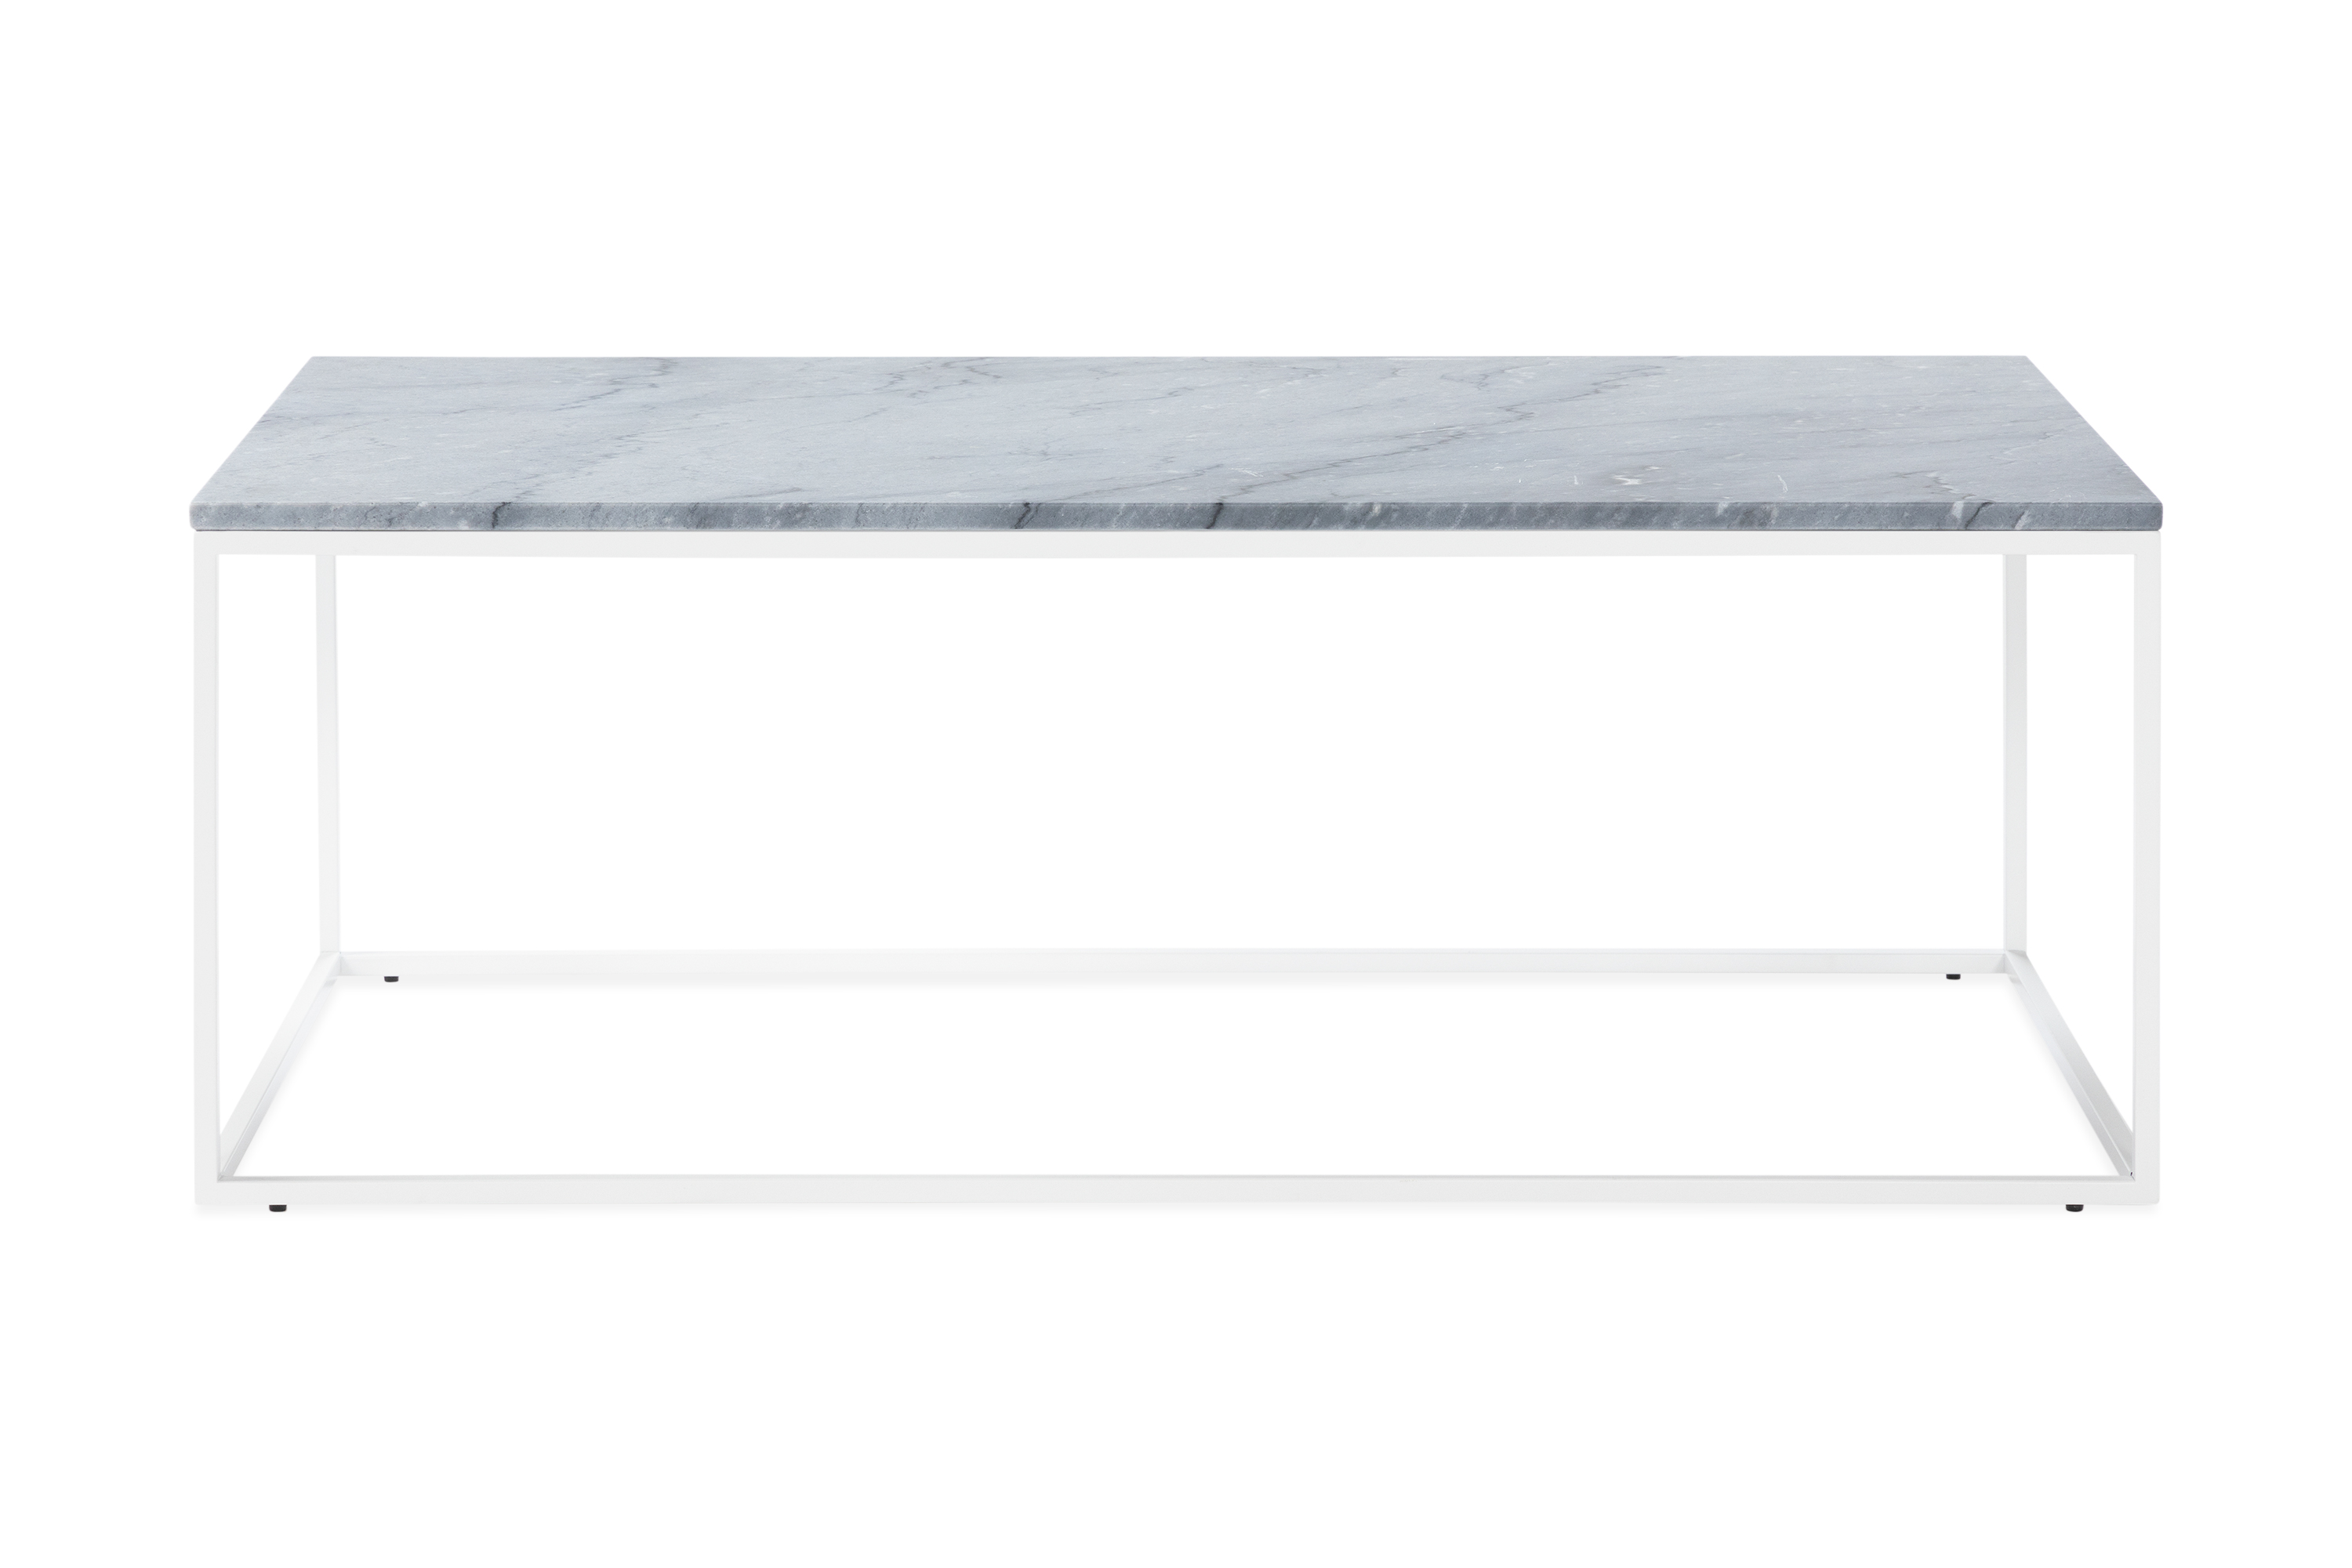 Soffbord Titania 120 cm Marmor - Grå/Vit